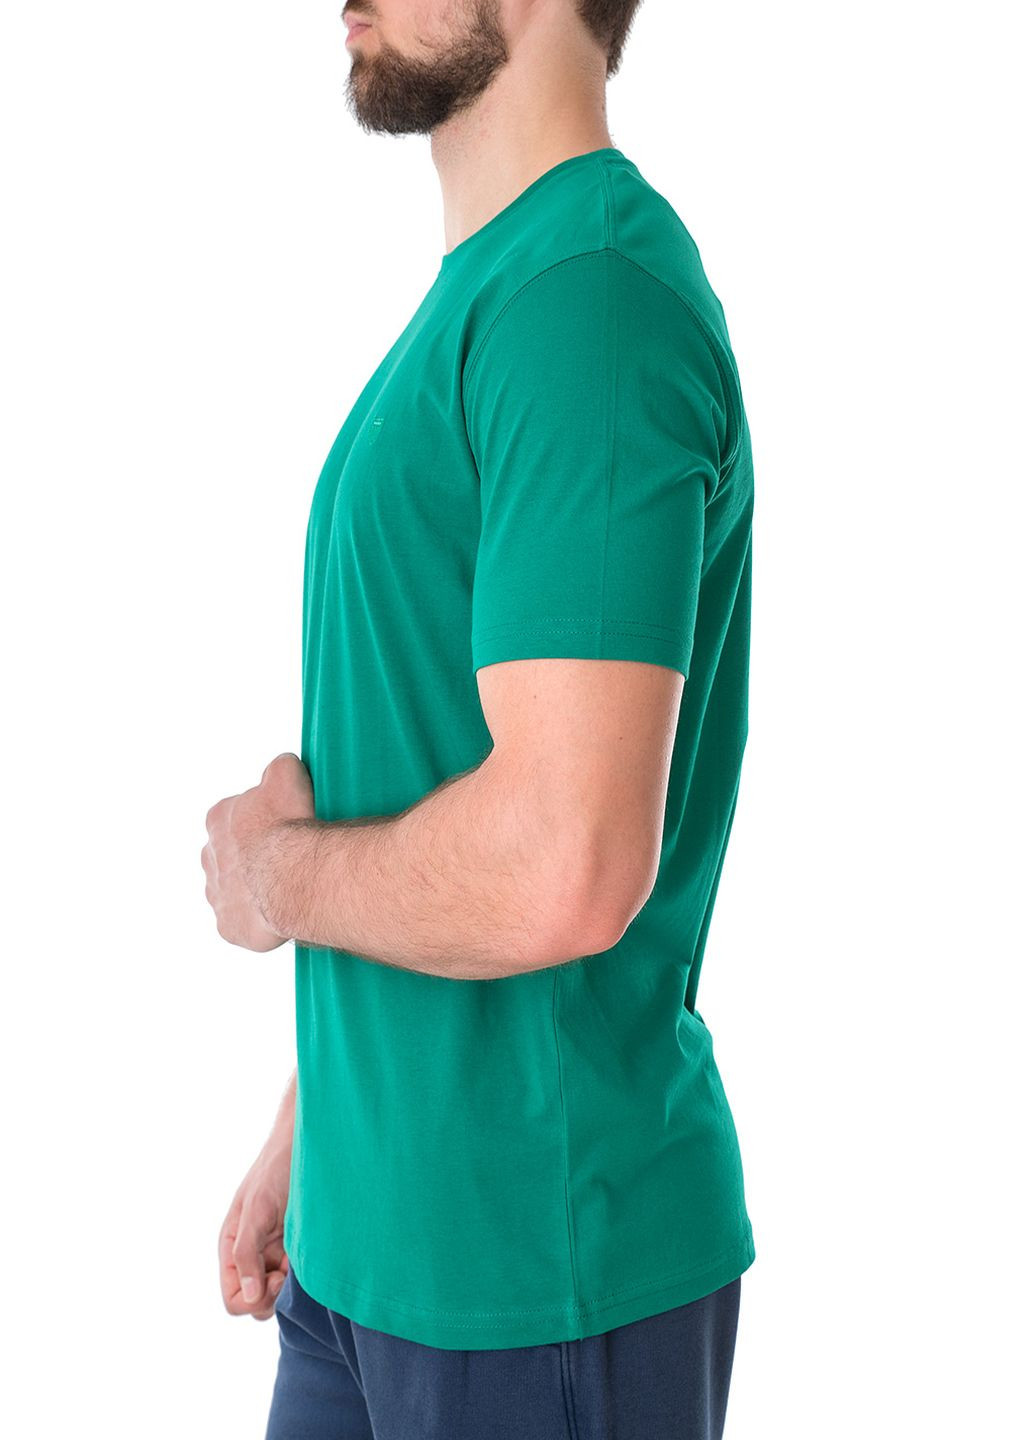 Зелена футболка Basefield